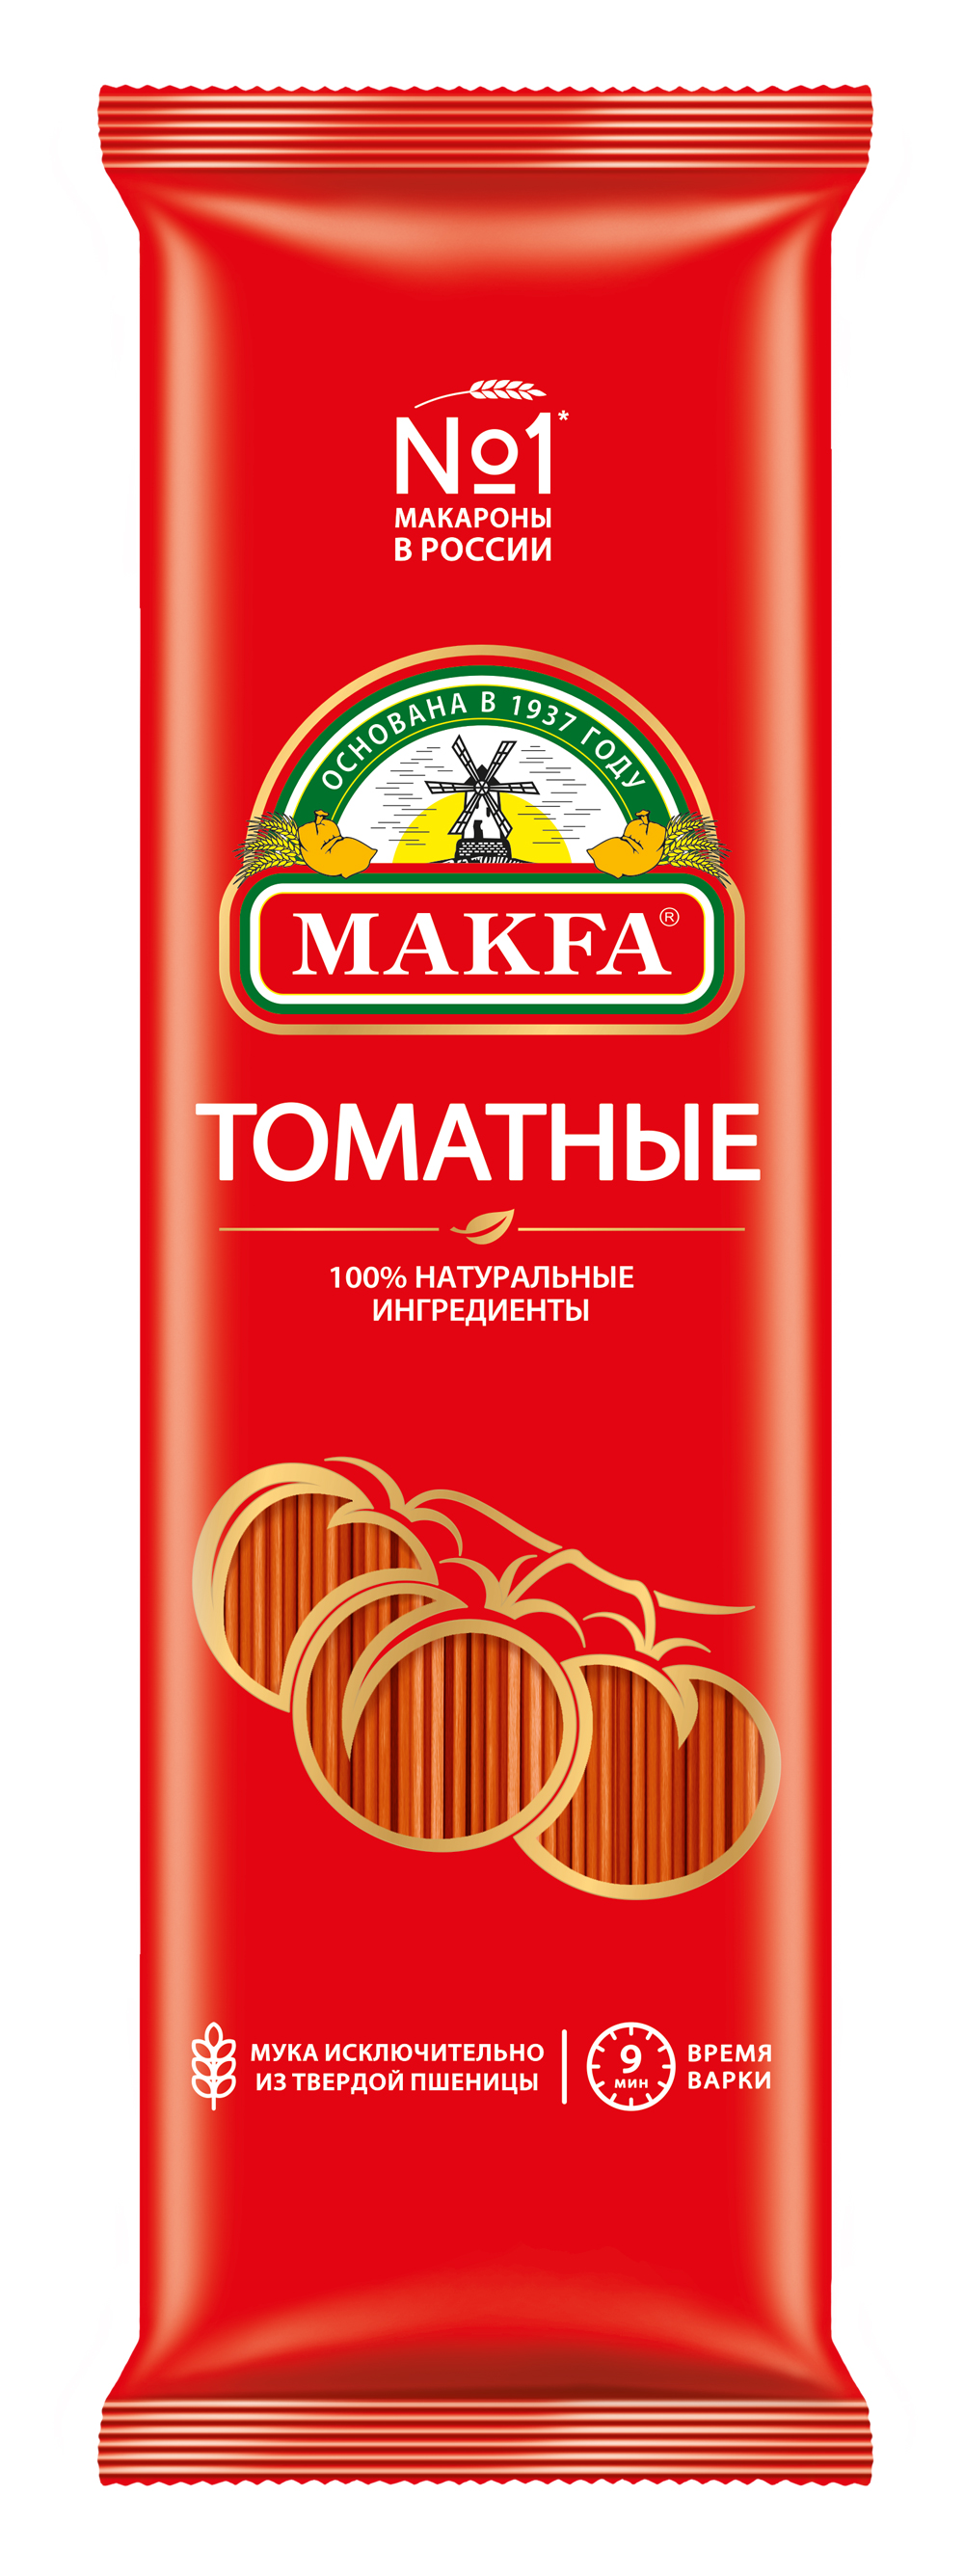 фото Макаронные изделия makfa спагетти томатные цветные 500 г